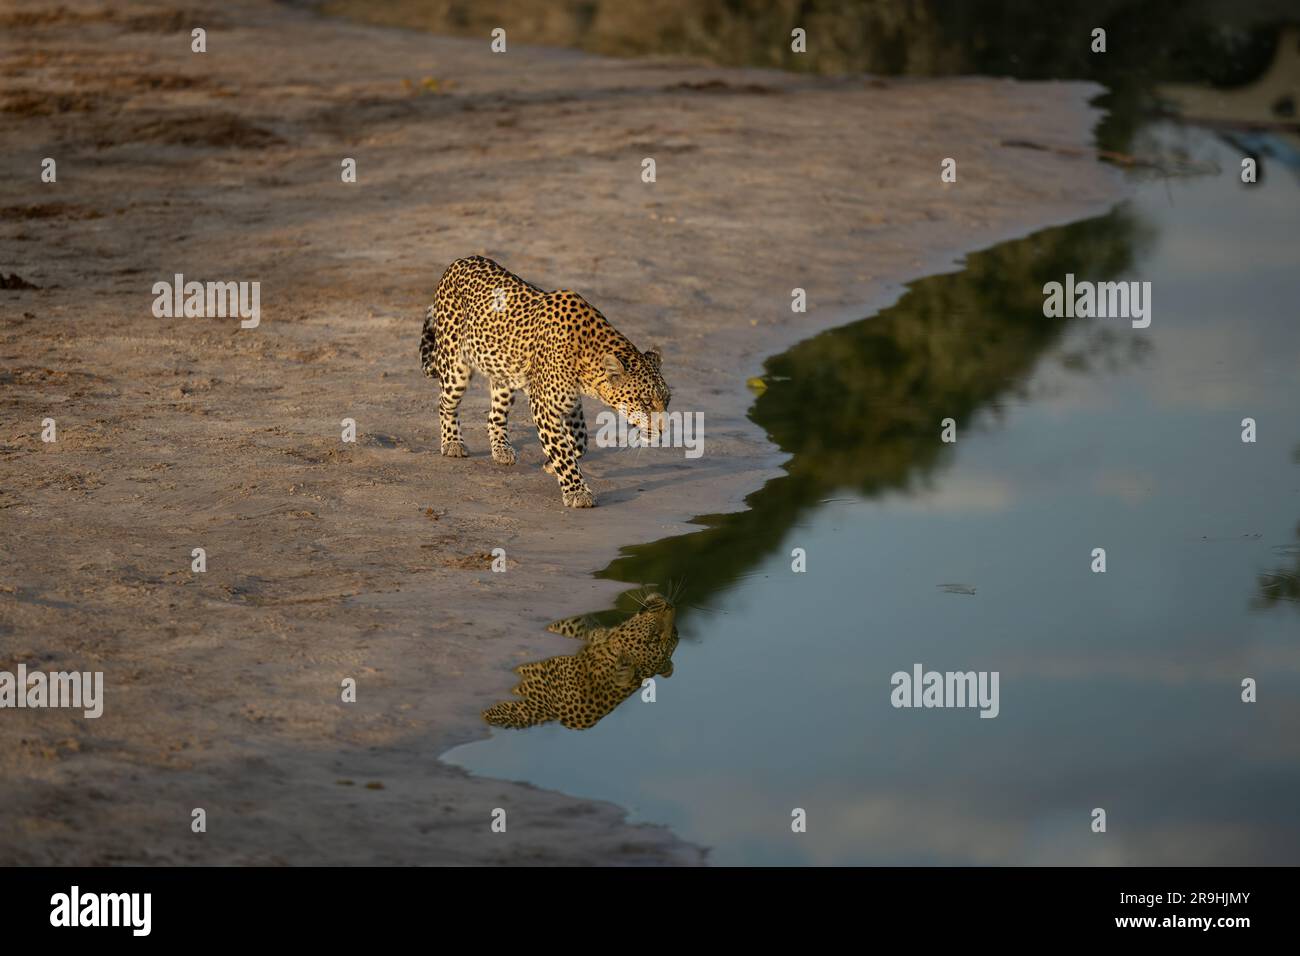 Un leopardo (femmina) arriva al pozzo d'acqua per bere nella luce migliore, grande riflessione, Savute, Chobe National Park, Botswana, Africa Foto Stock